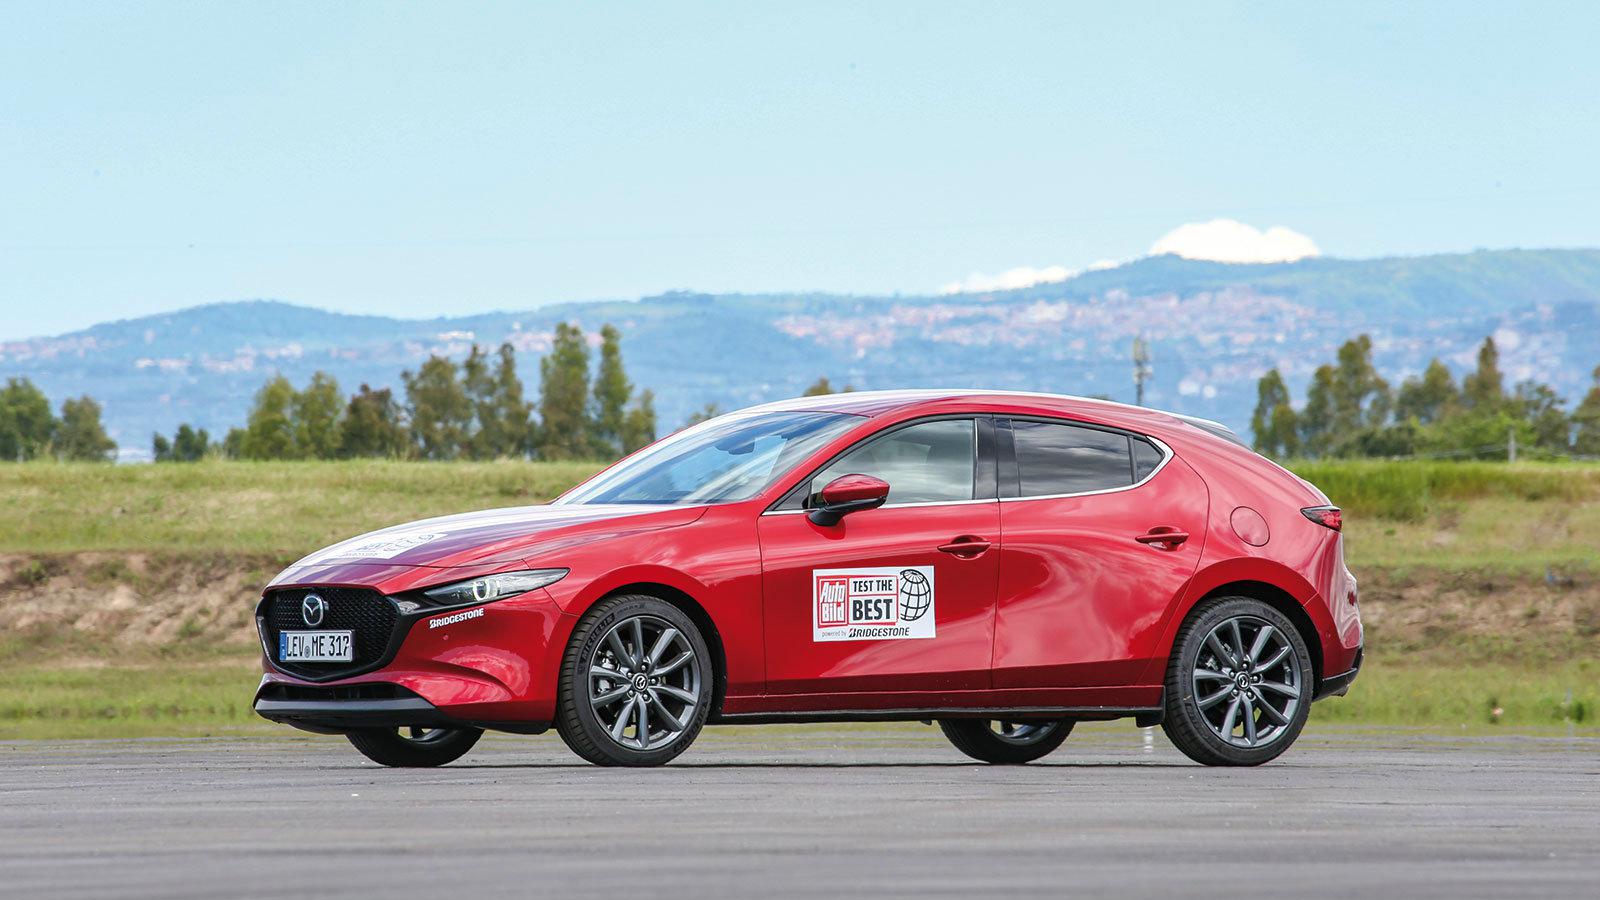 Η τέταρτη γενιά του Mazda 3 διατήρησε τα ιδιαίτερα χαρακτηριστικά των προκατόχων, αλλά ταυτόχρονα βασίστηκε σε μια νέα πιο premium γλώσσα σχεδιασμού.